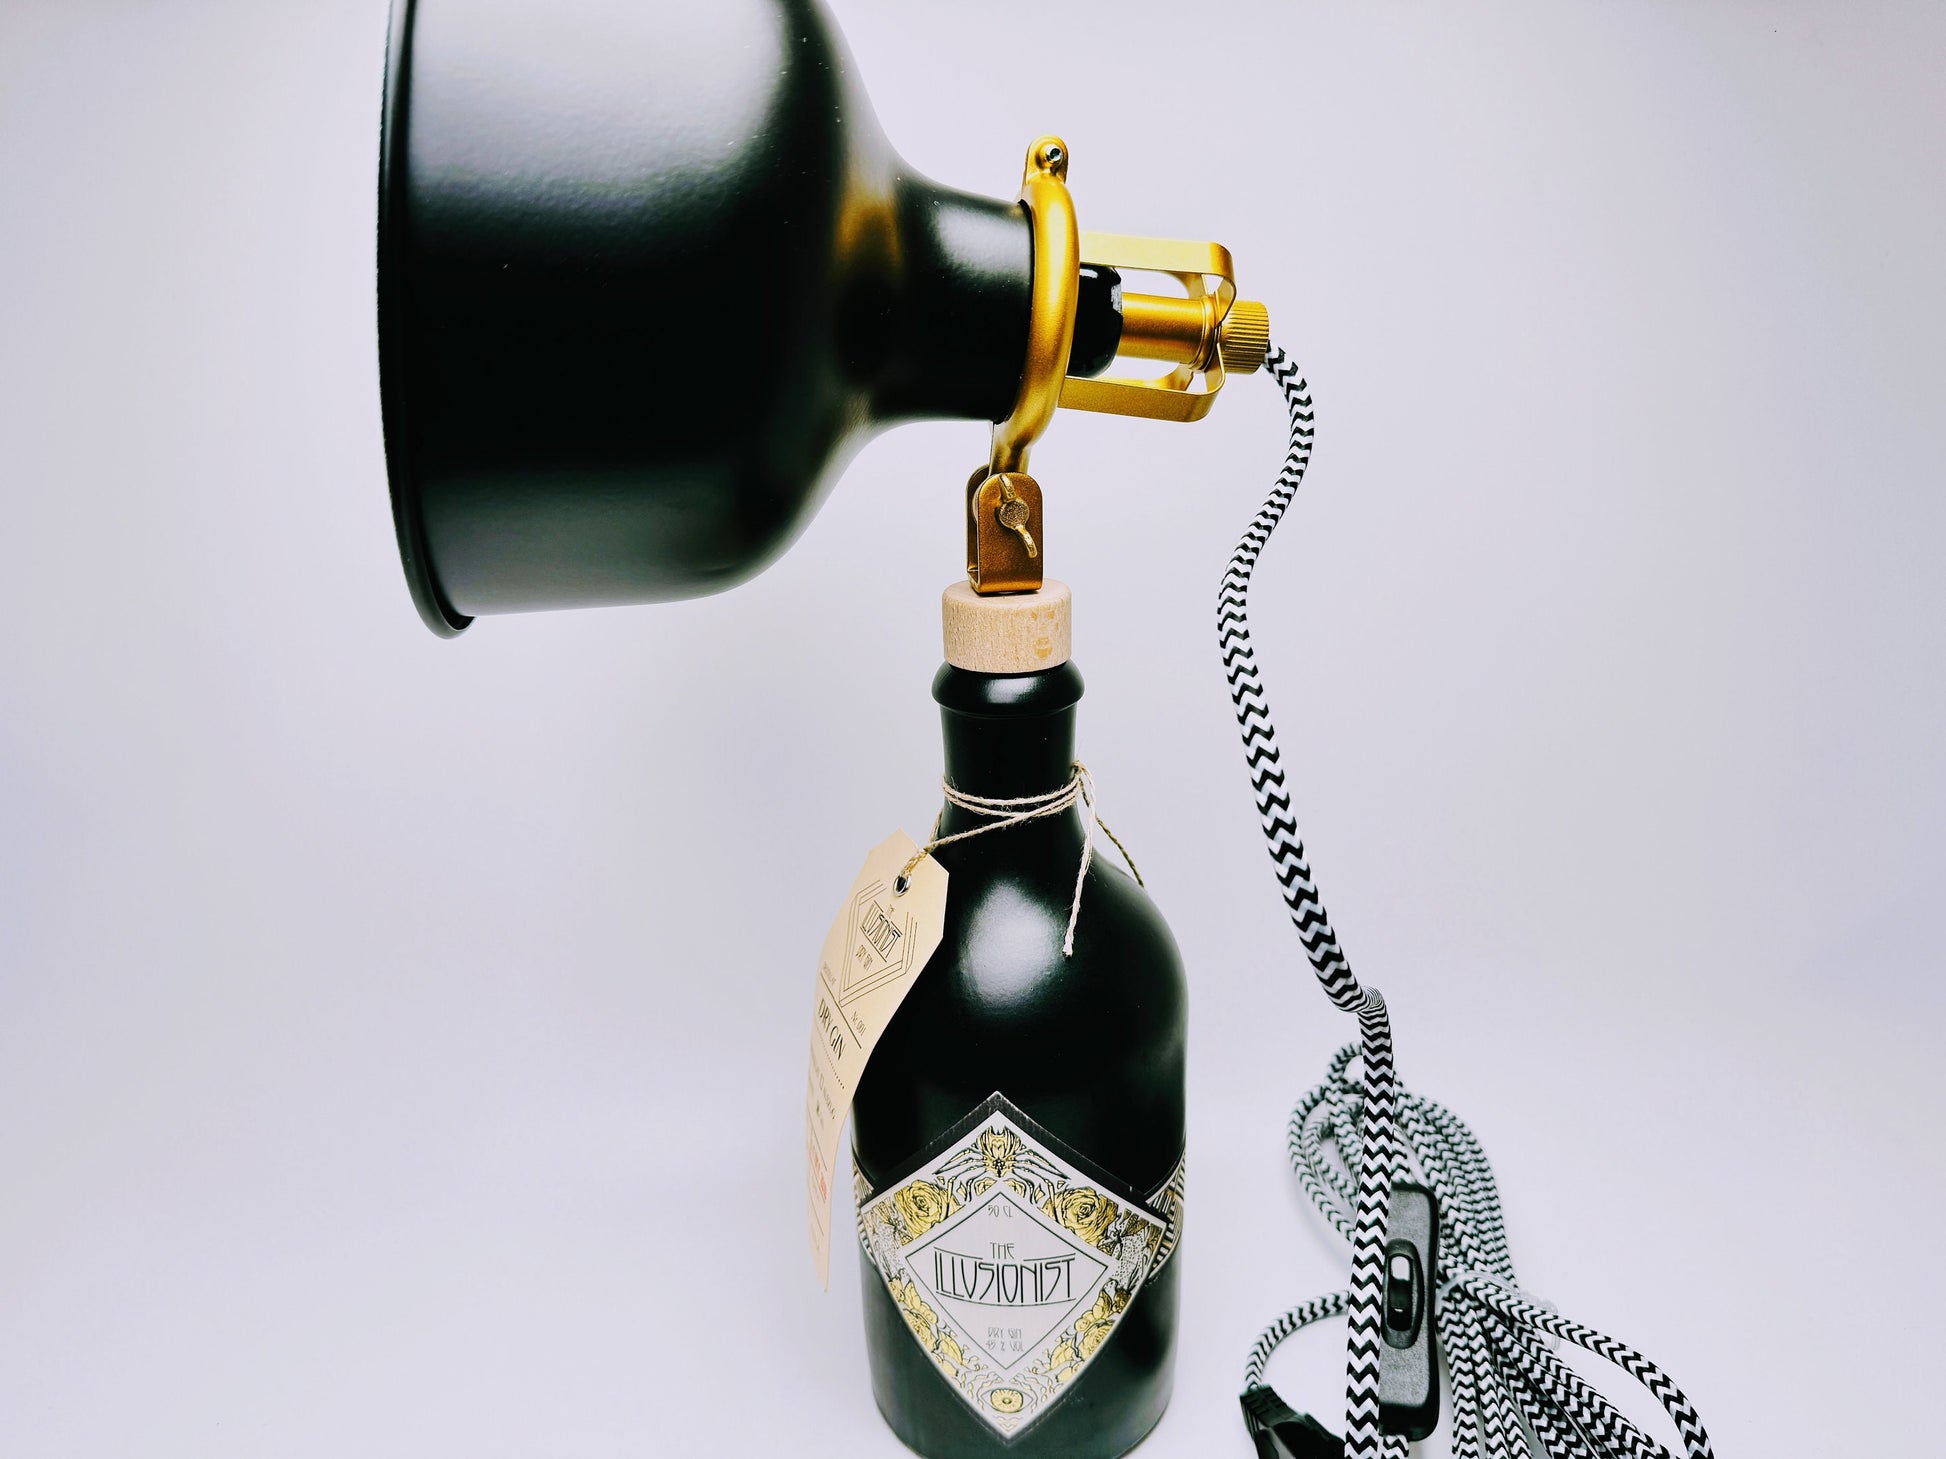 Illusionist Gin Vintage-Lampe - Handgemachte nachhaltige Tischlampe aus Illusionist Gin | Einzigartige Geschenkidee | Deko-Licht | Upcycling